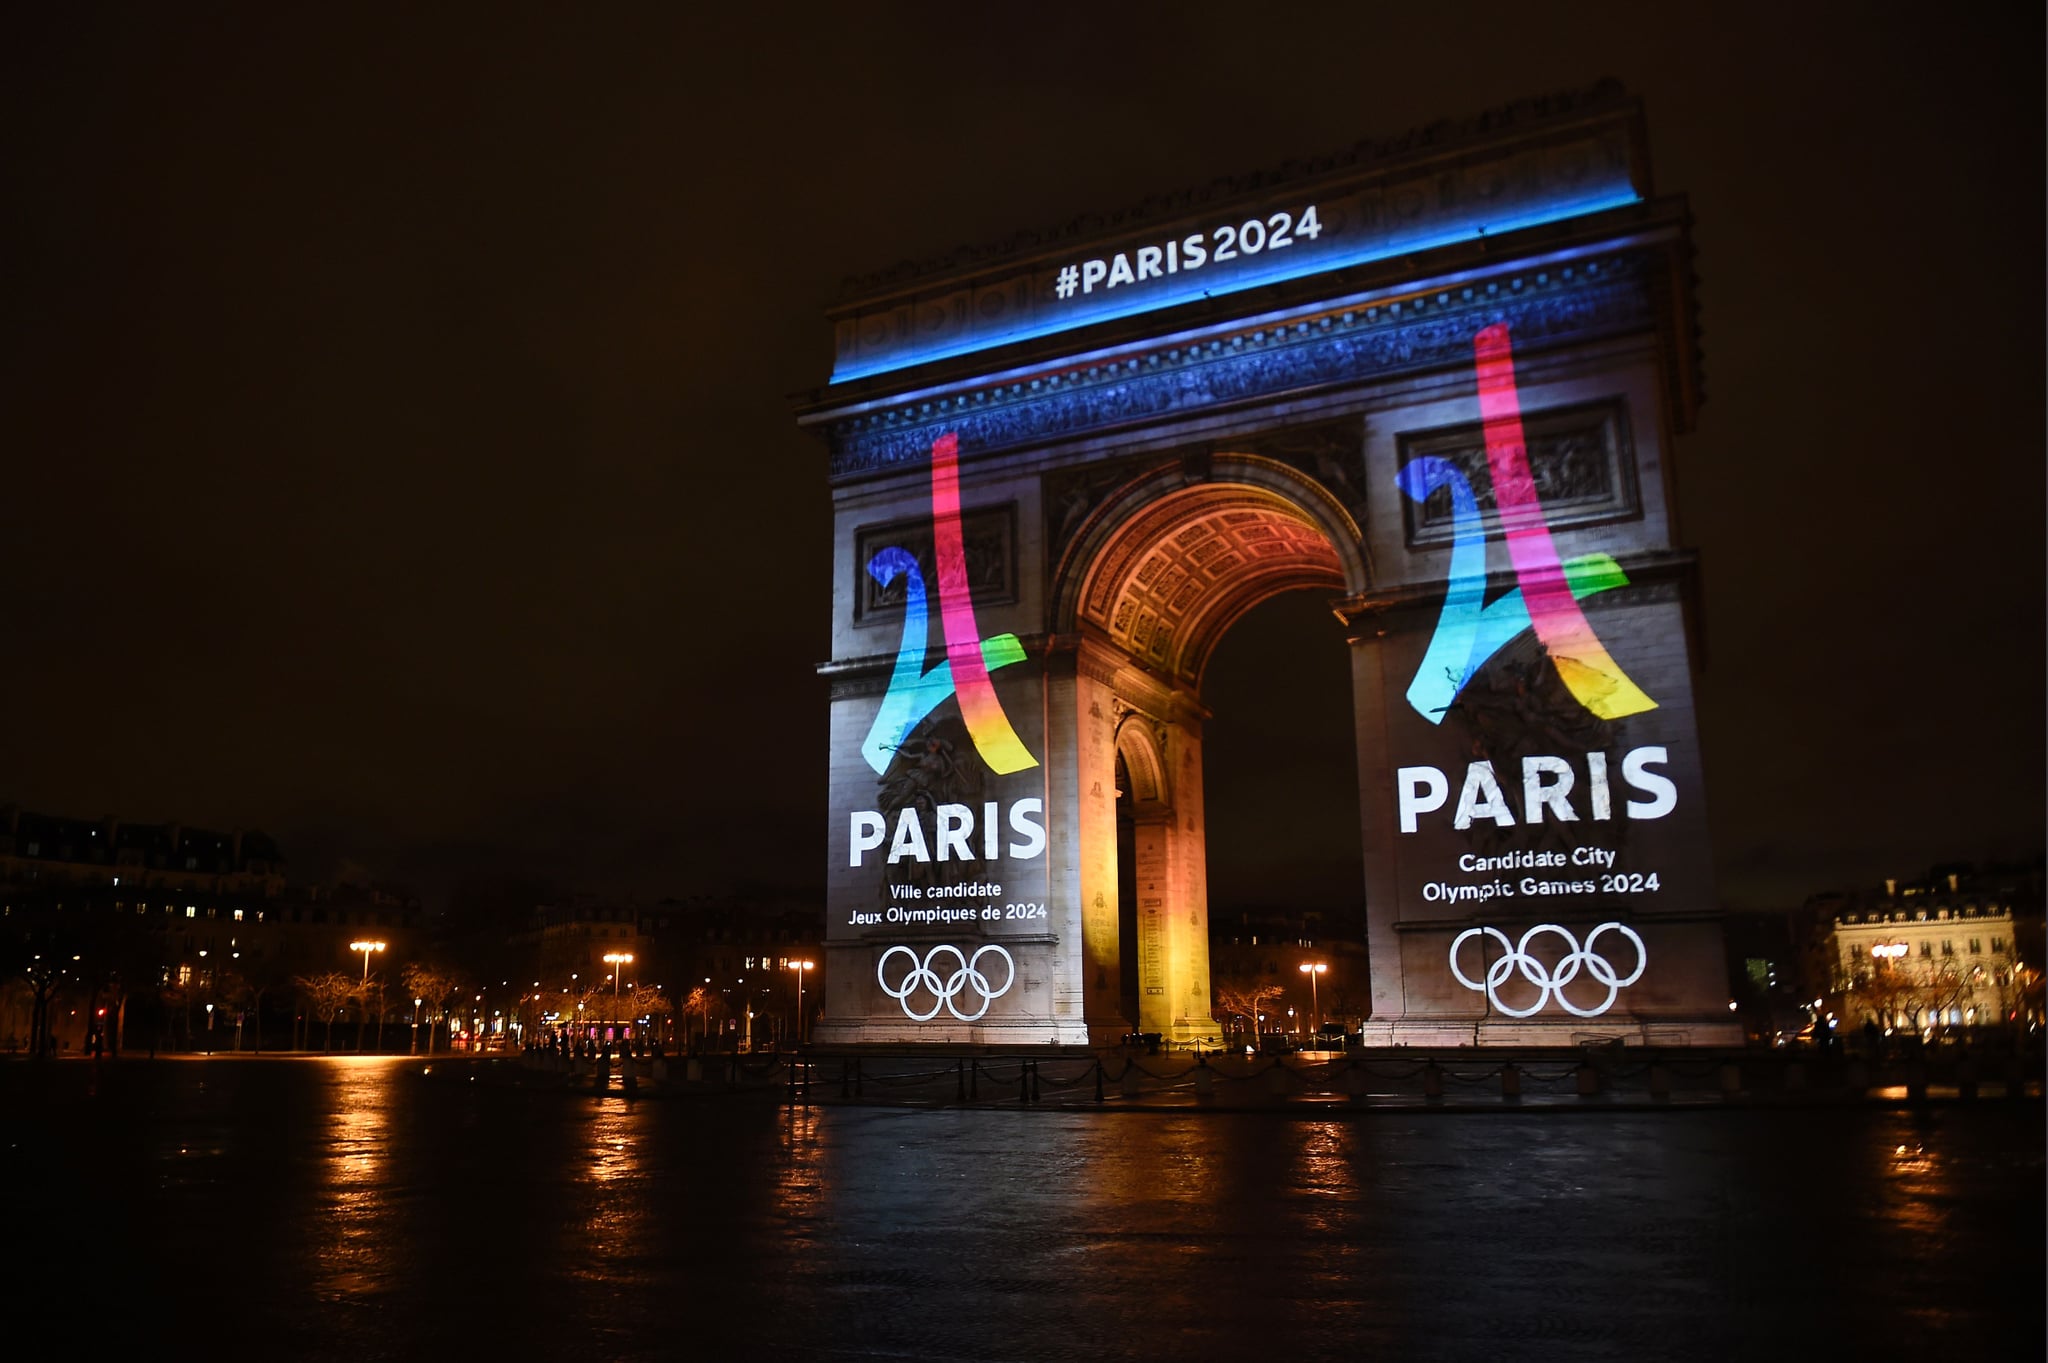 أولمبياد باريس تخطط لحفل افتتاح مبتكر شبكة رؤية الإخبارية